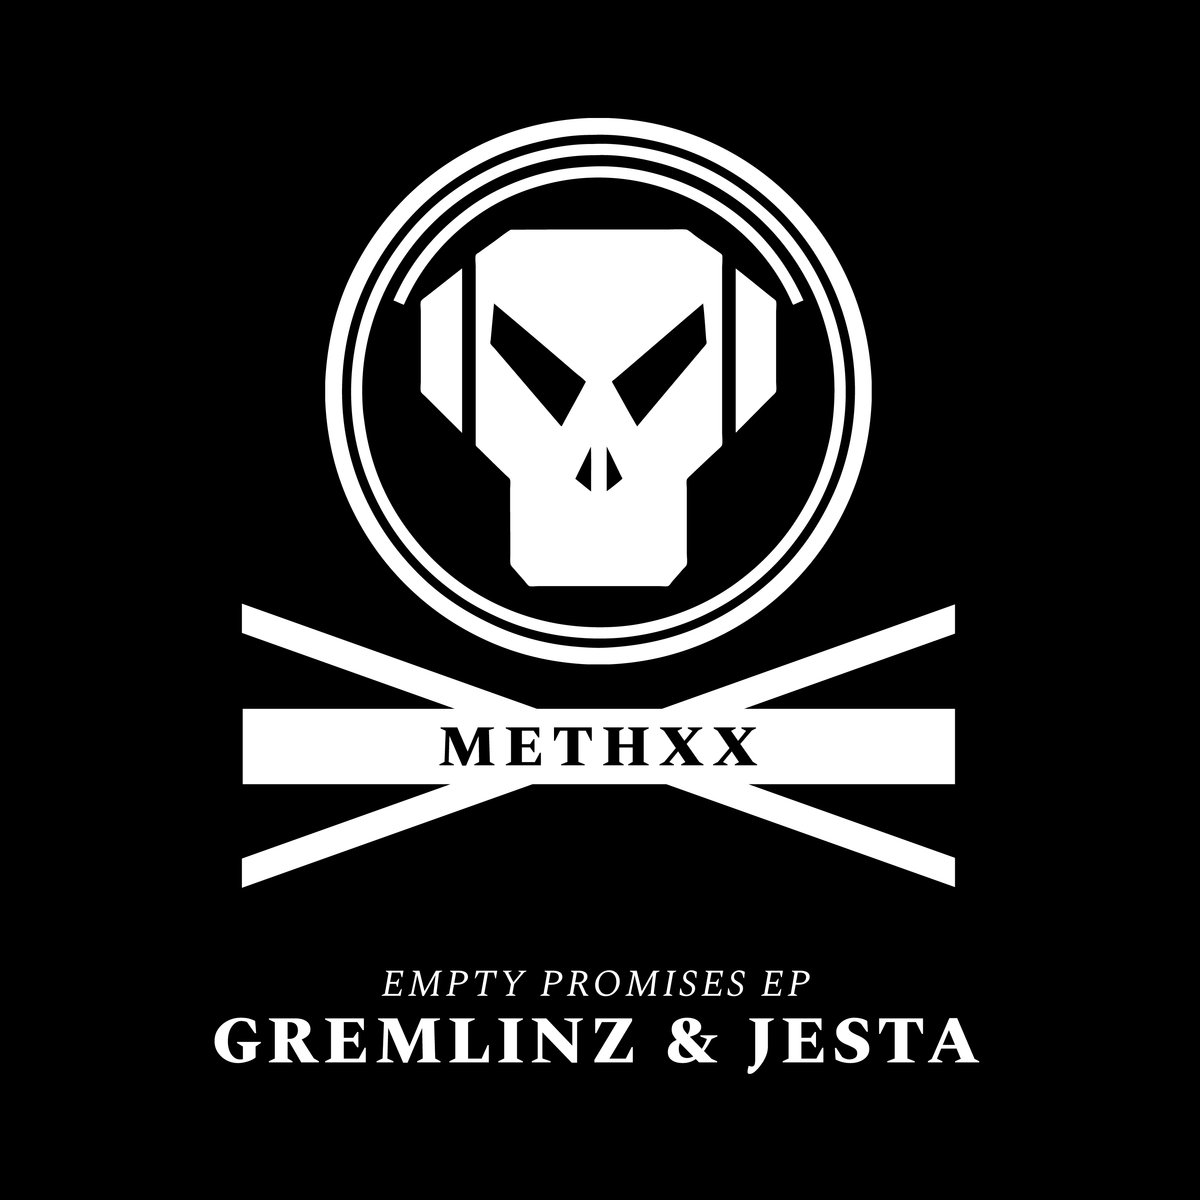 Gremlinz & Jesta/EMPTY PROMISES EP 12"